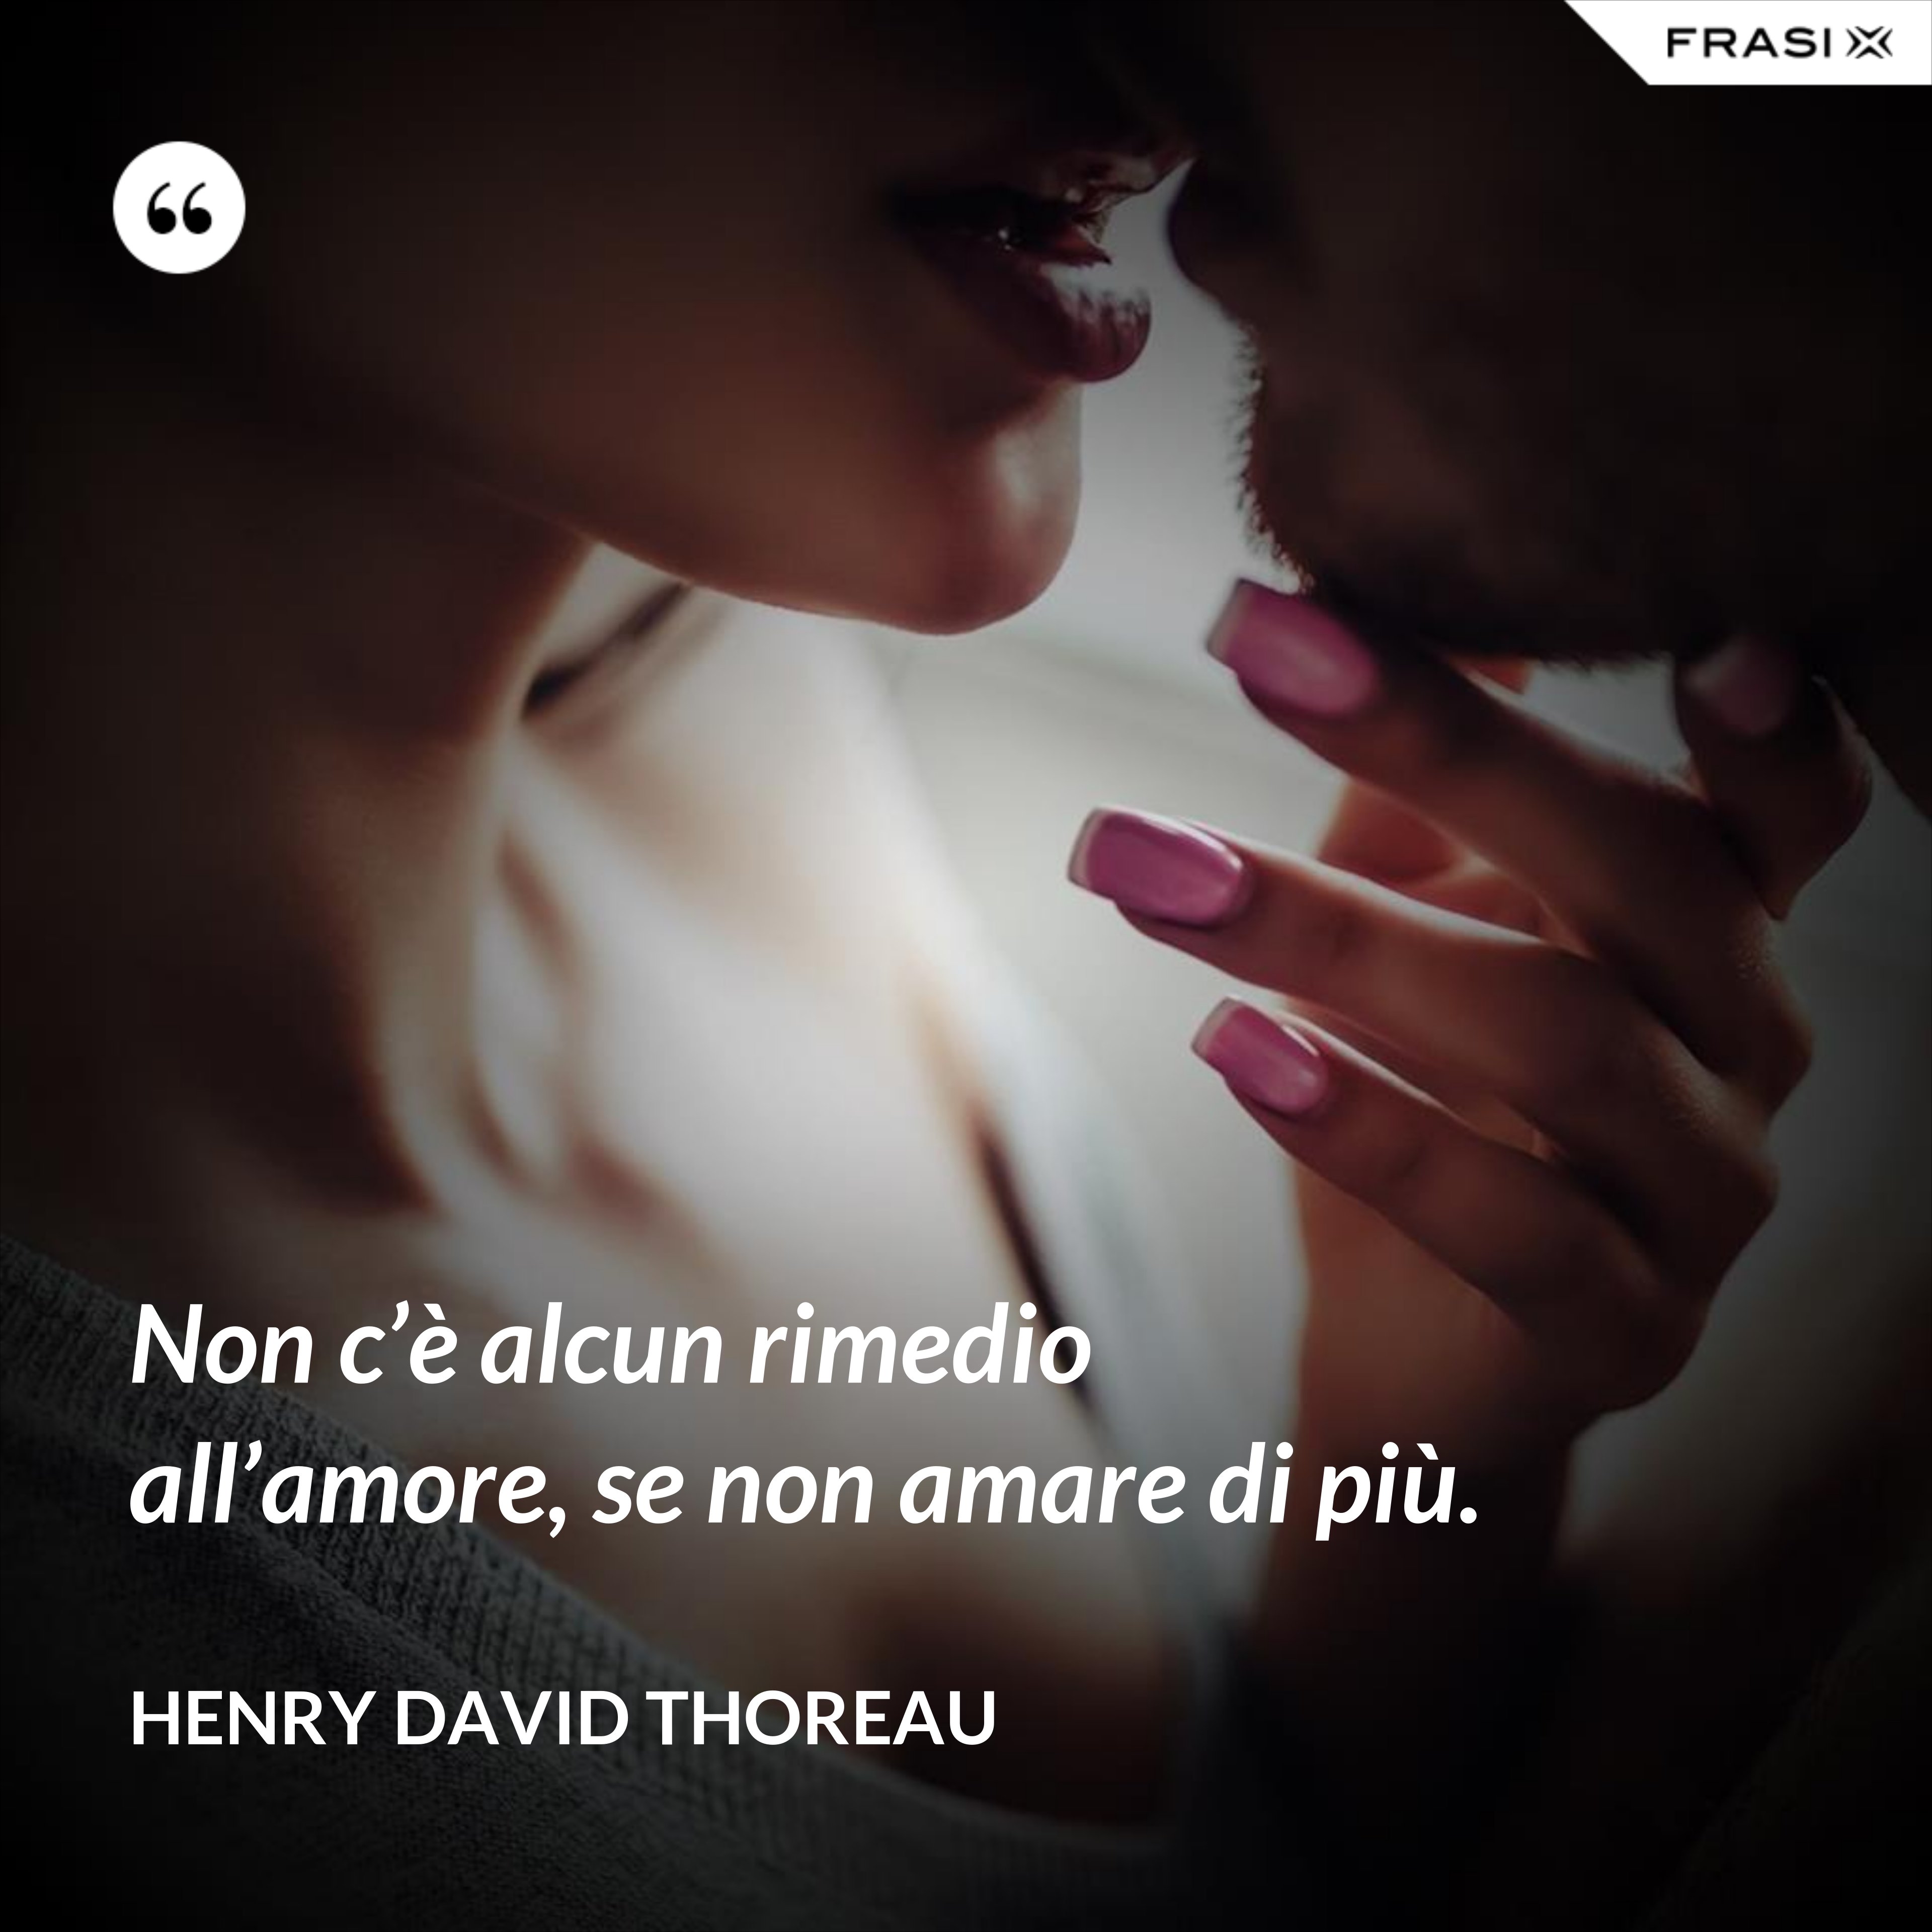 Non c’è alcun rimedio all’amore, se non amare di più. - Henry David Thoreau